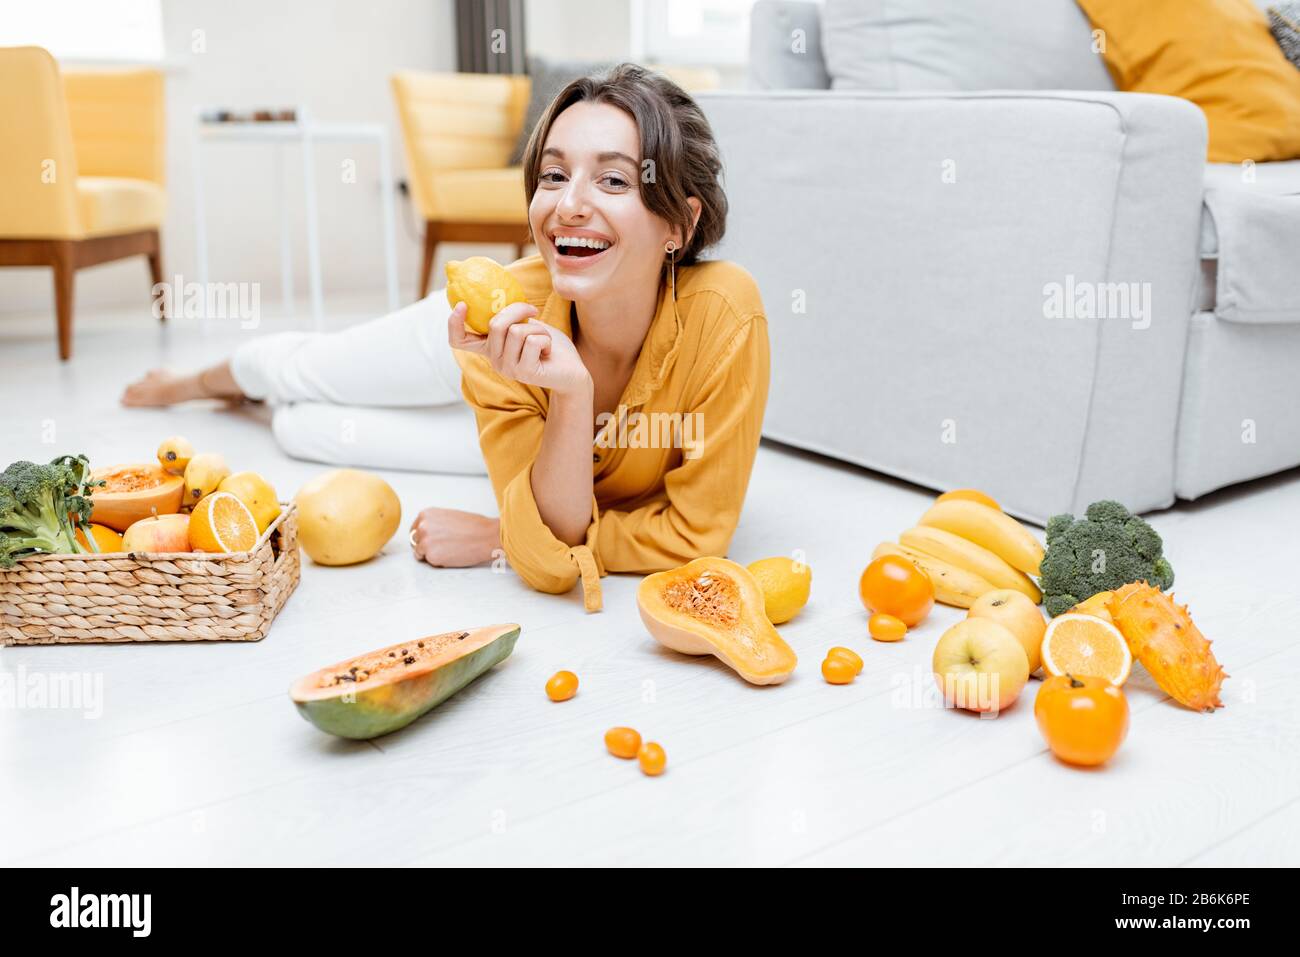 Ritratto di una giovane e allegra donna sdraiata con un sacco di frutta fresca e verdure sul pavimento a casa. Foto in giallo. Concetto di benessere, cibo sano e solitudine Foto Stock